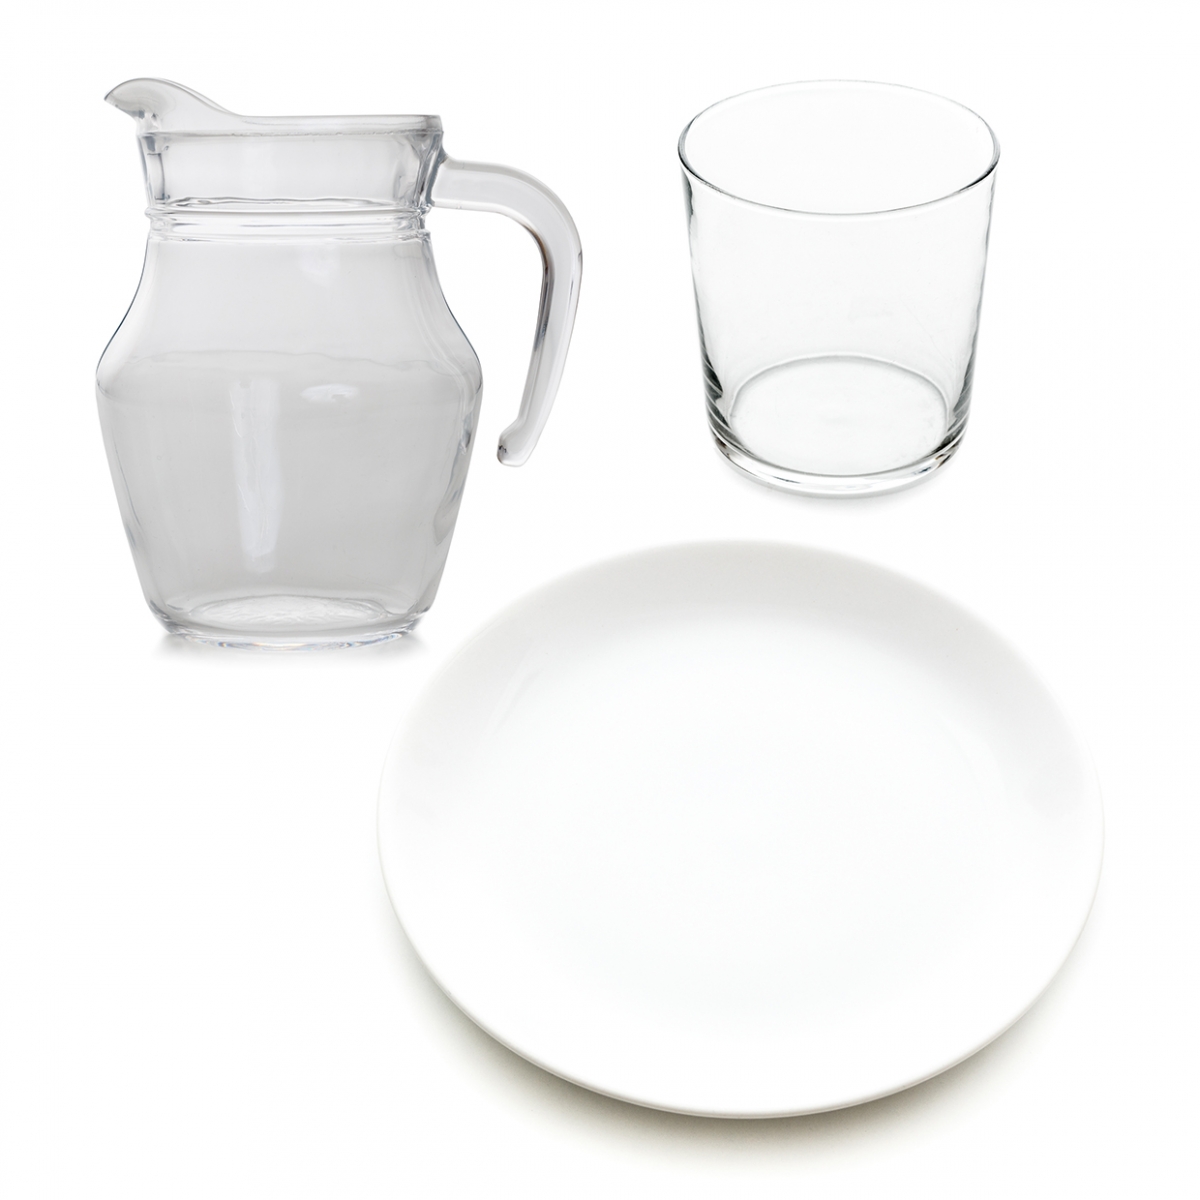 Imagen en la que se ven tres elementos de una vajilla: un plato, una jarra y un vaso